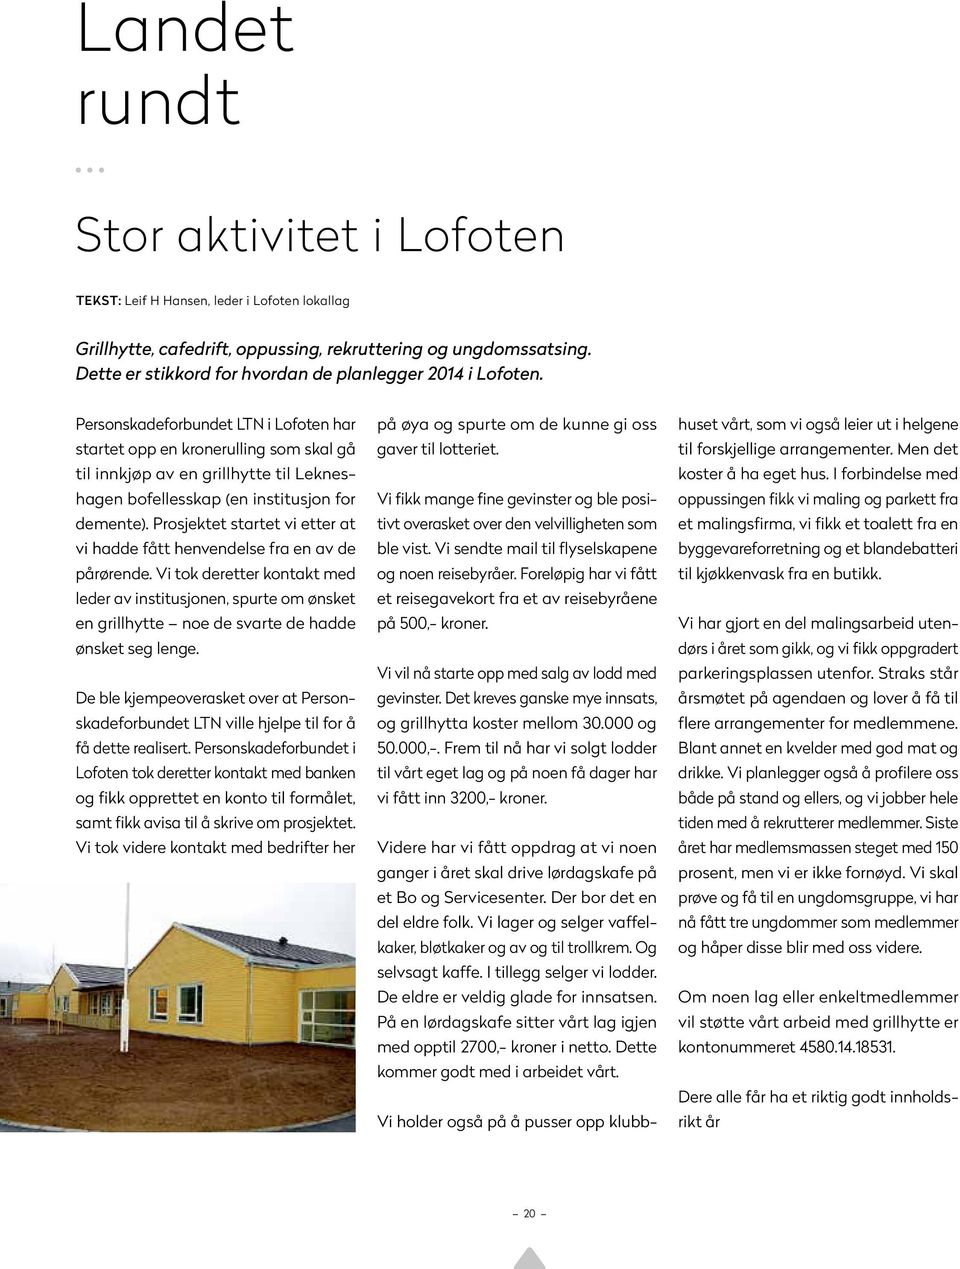 Personskadeforbundet LTN i Lofoten har startet opp en kronerulling som skal gå til innkjøp av en grillhytte til Lekneshagen bofellesskap (en institusjon for demente).